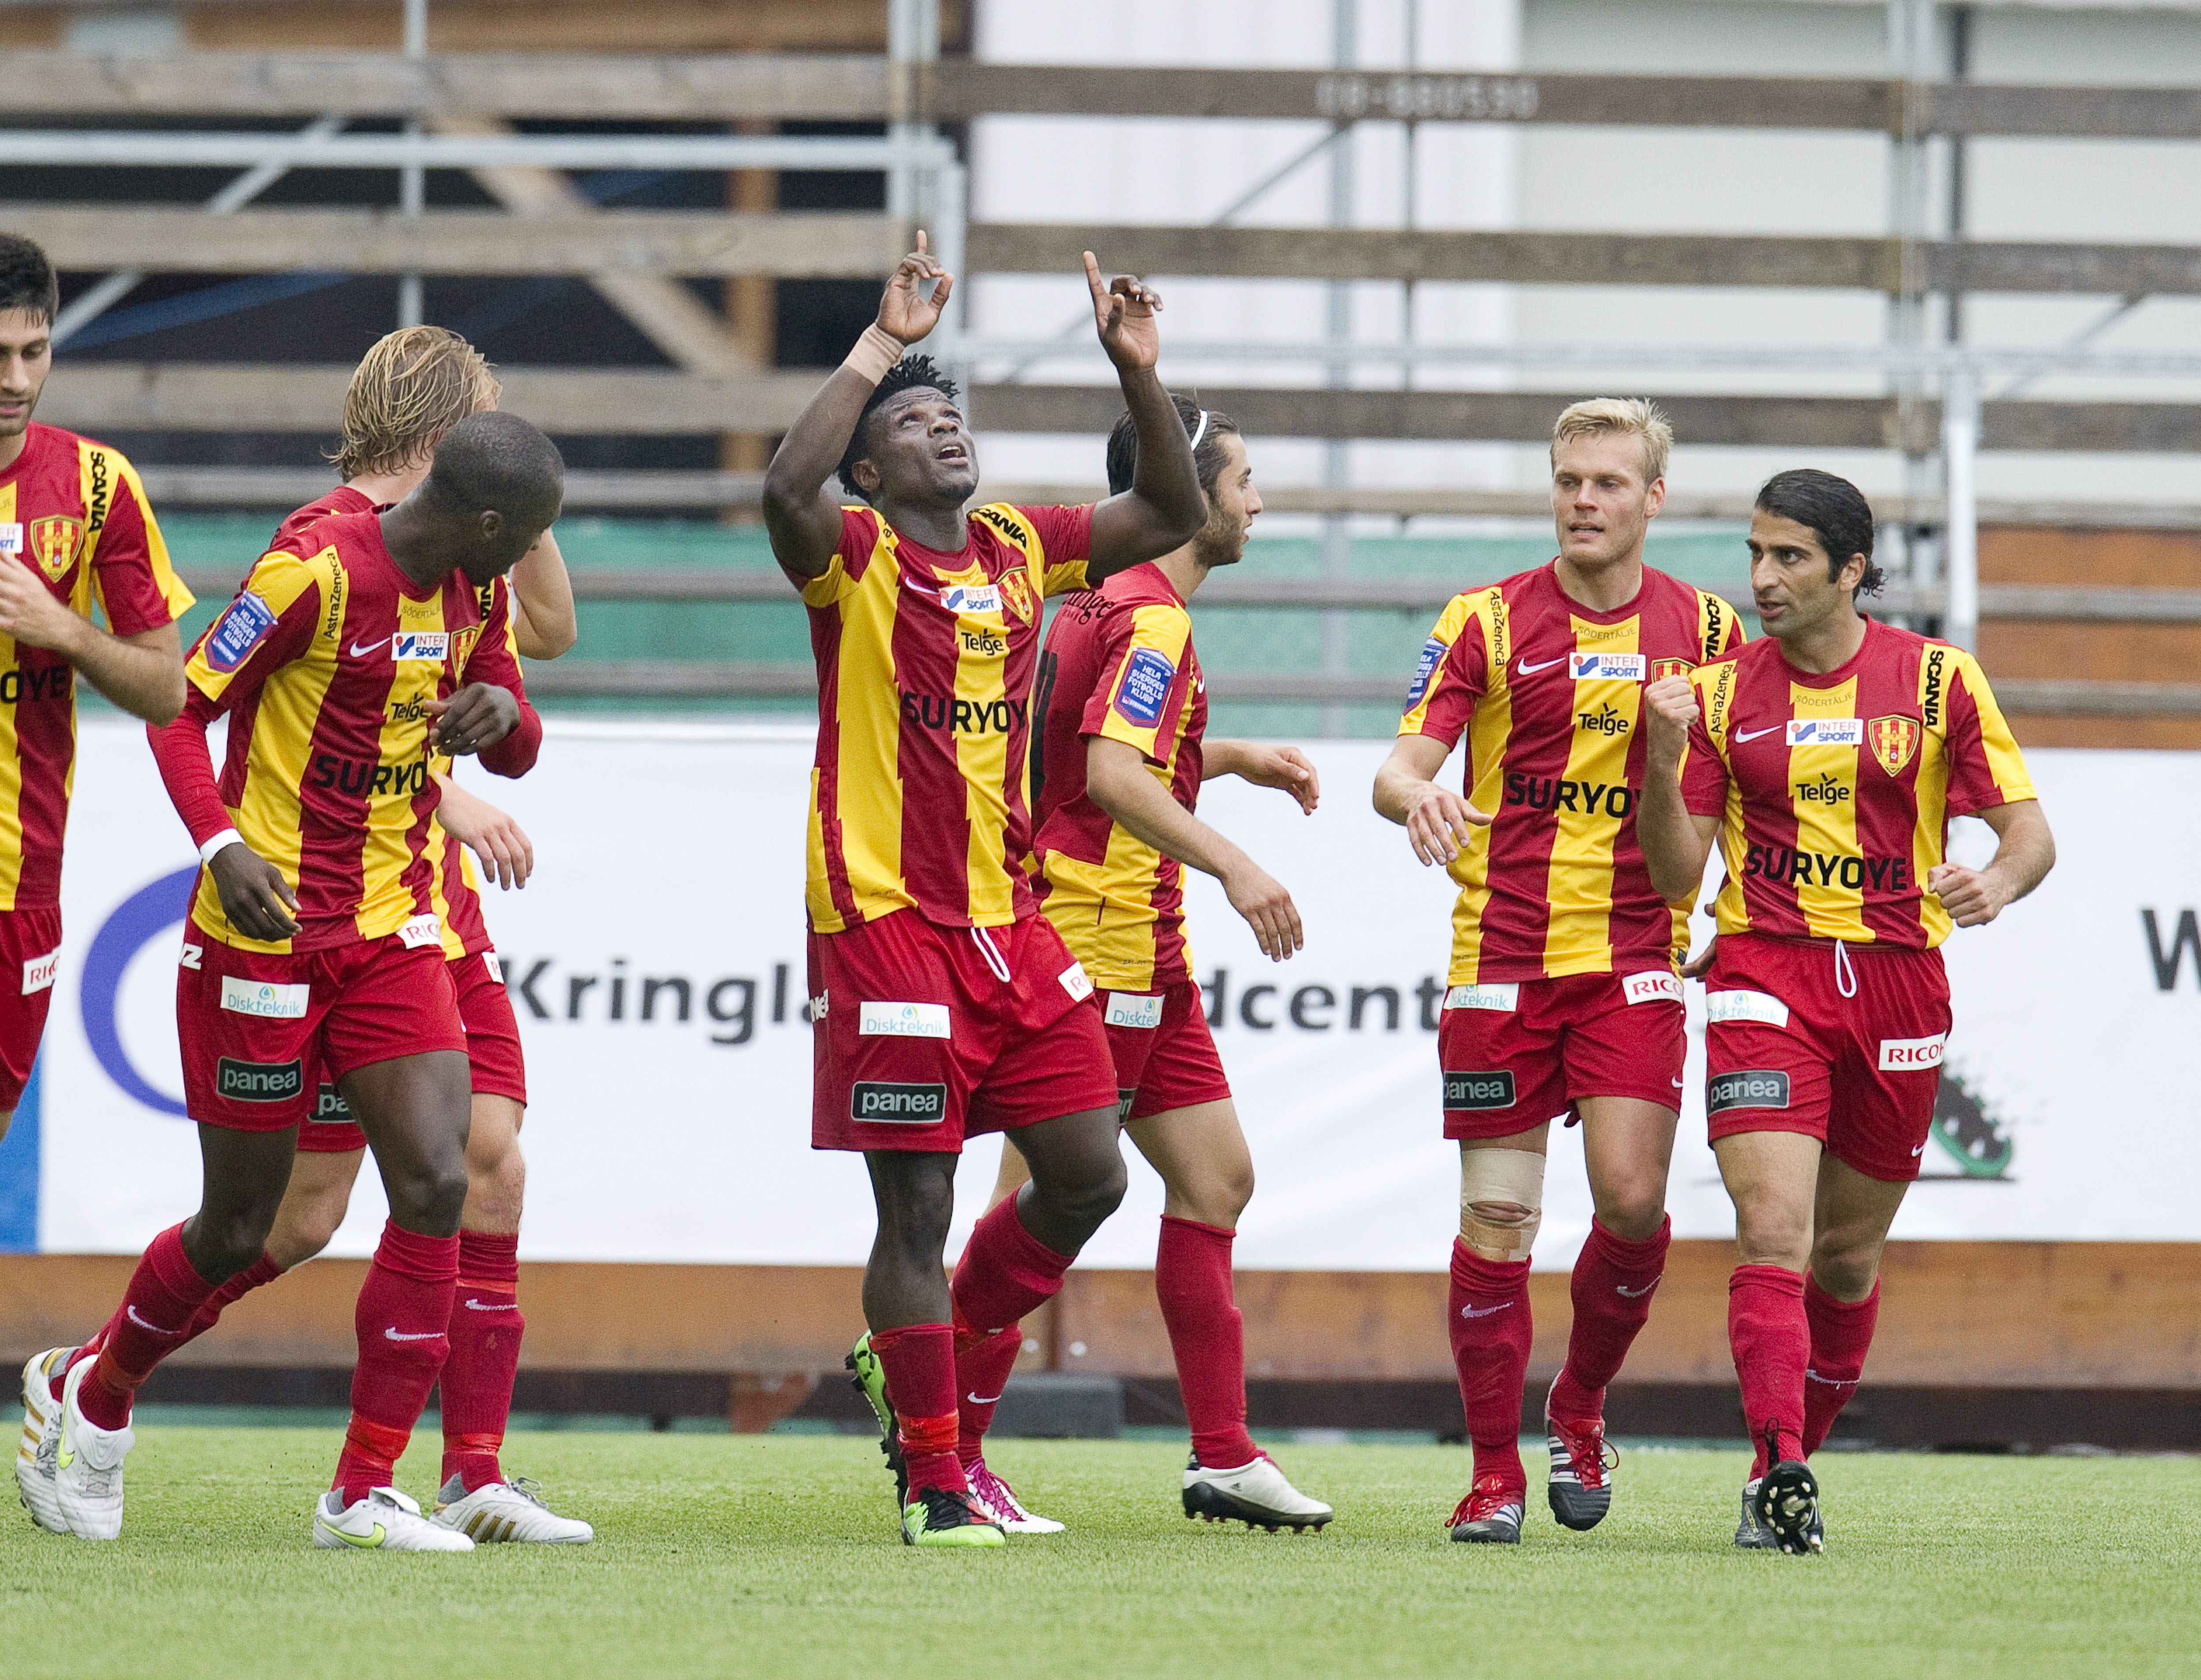 Syrianska tog sin första segern på sex matcher när Kalmar besegrades med 2-1.